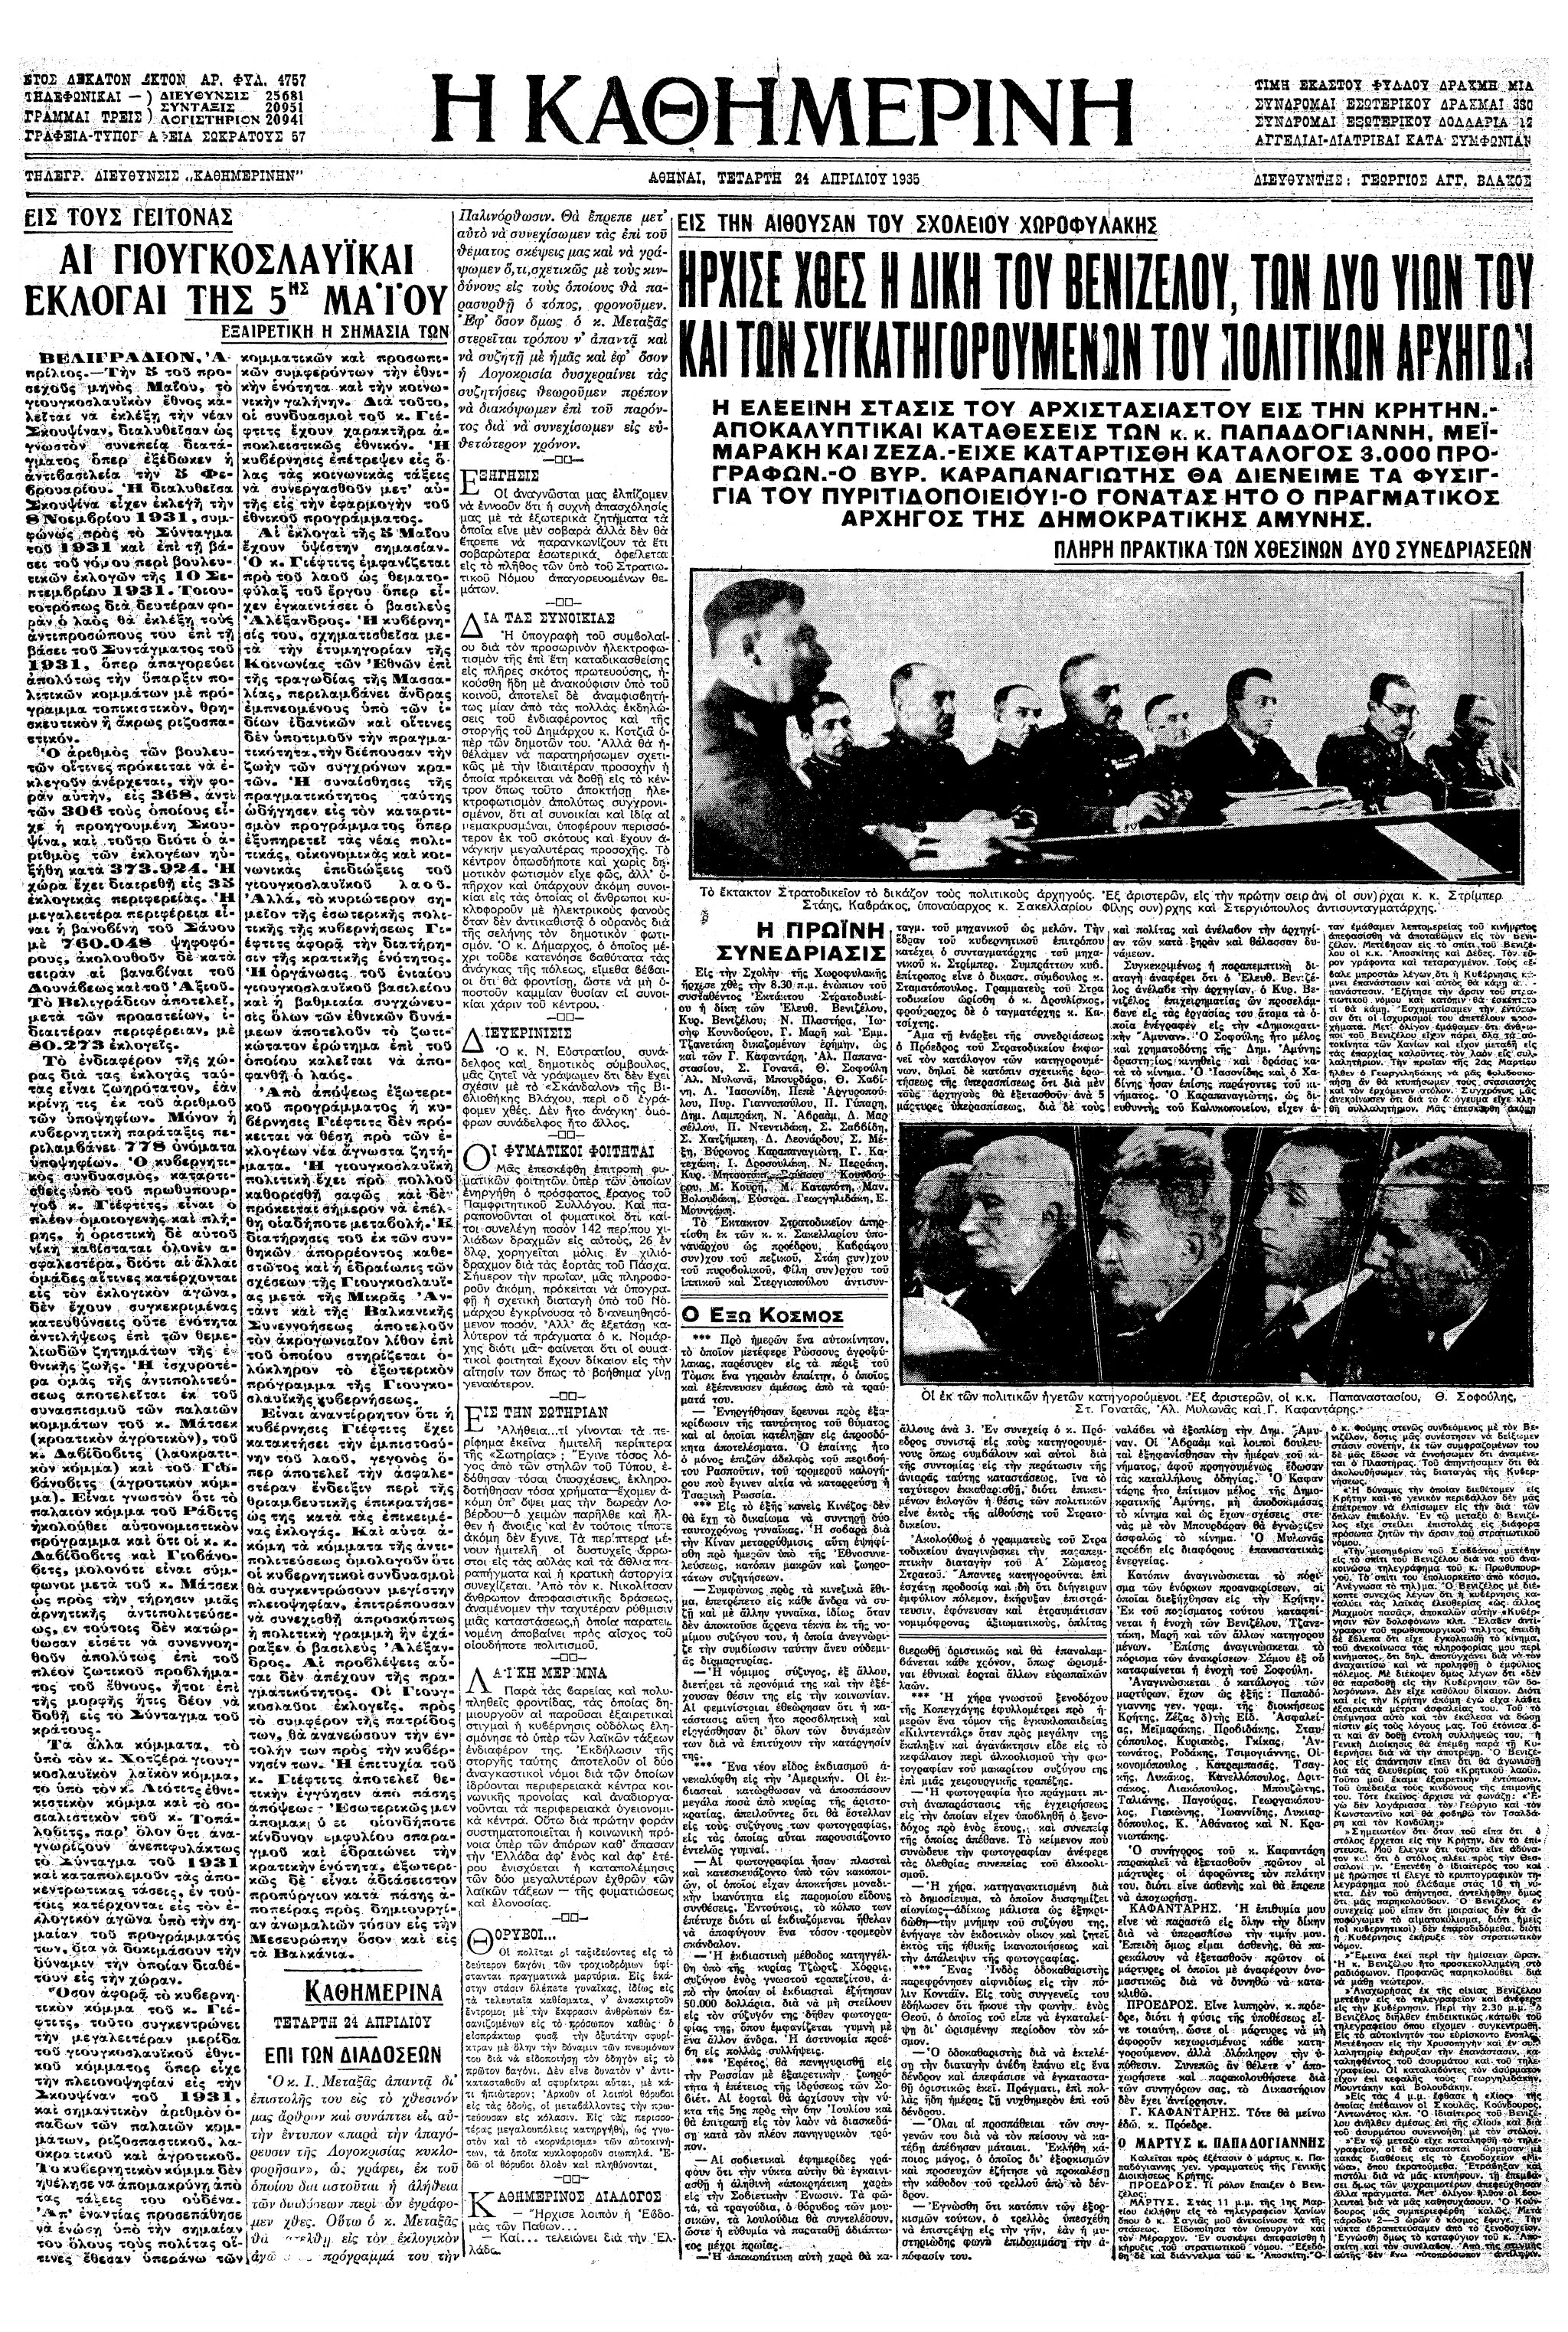 Σαν σήμερα: 23 Απριλίου 1935 – Η έναρξη της δίκης του Ελ. Βενιζέλου και των συγκατηγορούμενών του για το Κίνημα της 1ης Μαρτίου-1